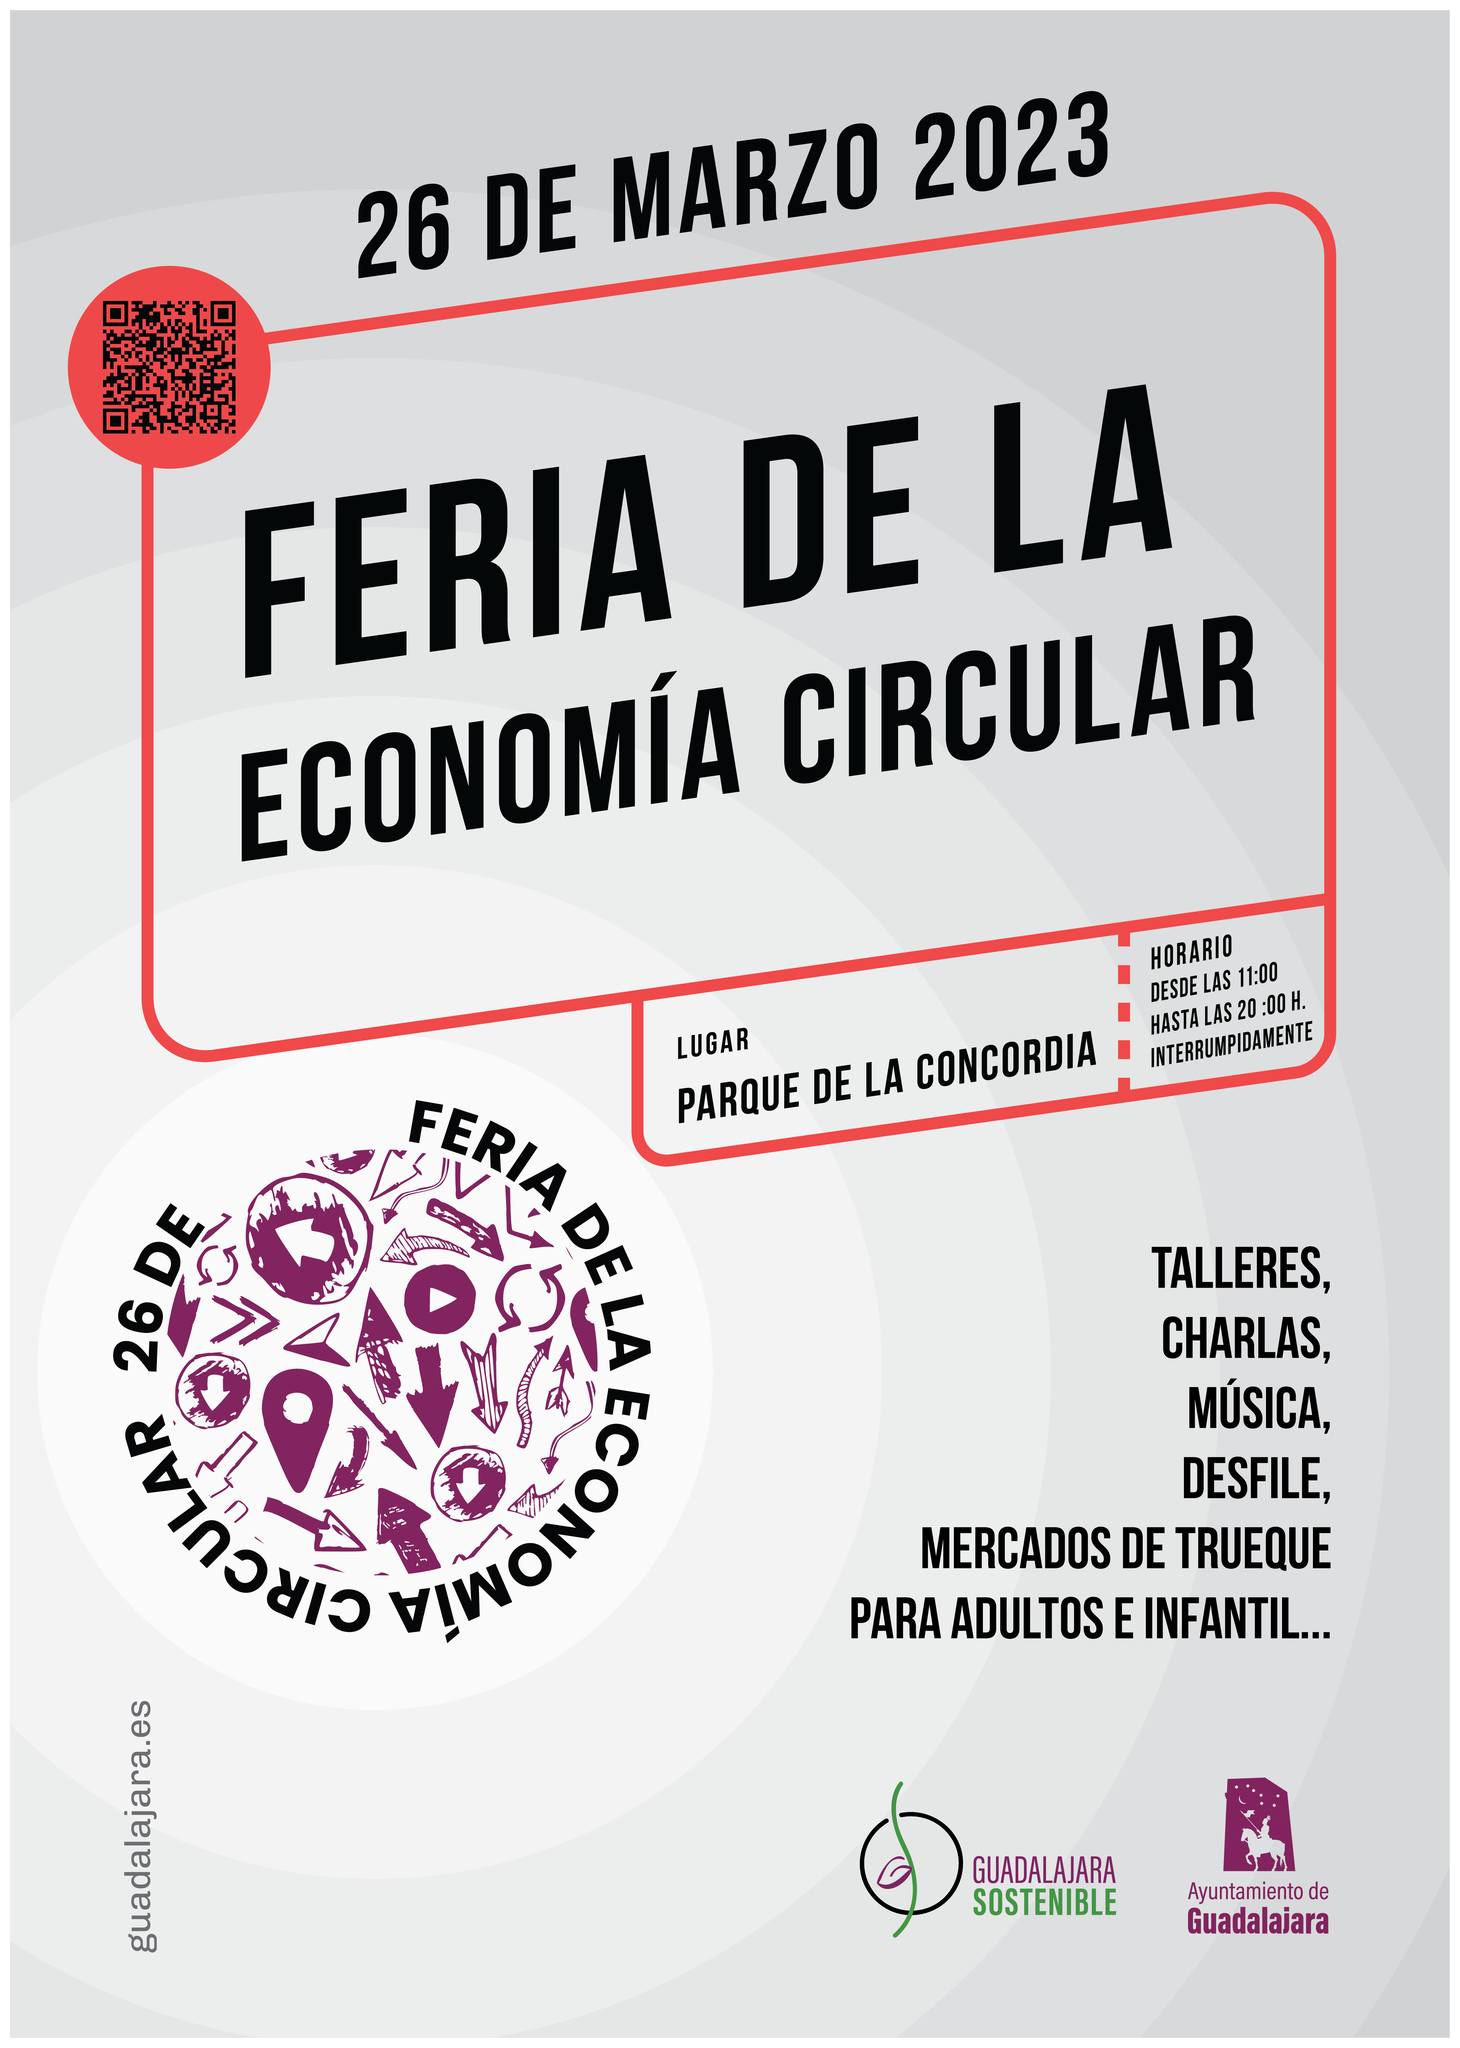 Feria de la Economía Circular en La Concordia: Un evento para el reciclaje y el trueque.